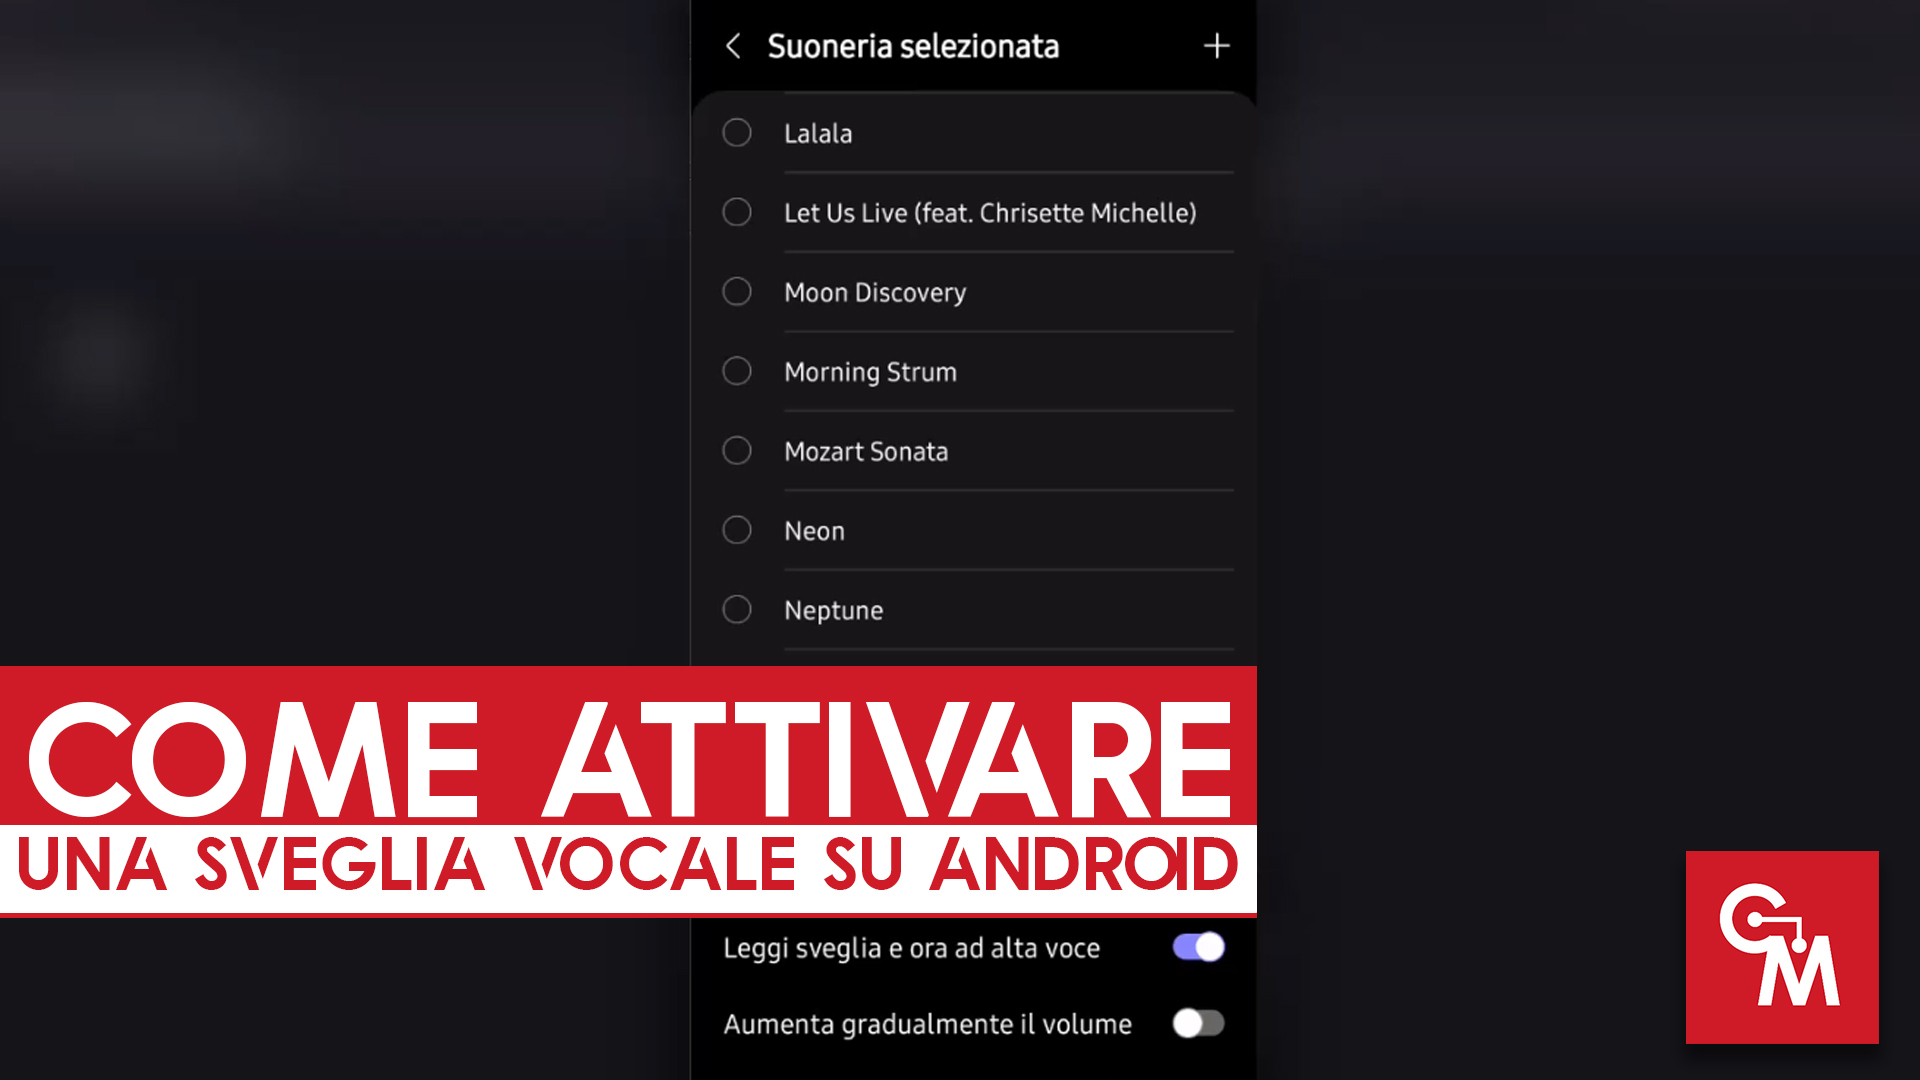 Come attivare una sveglia vocale su Android